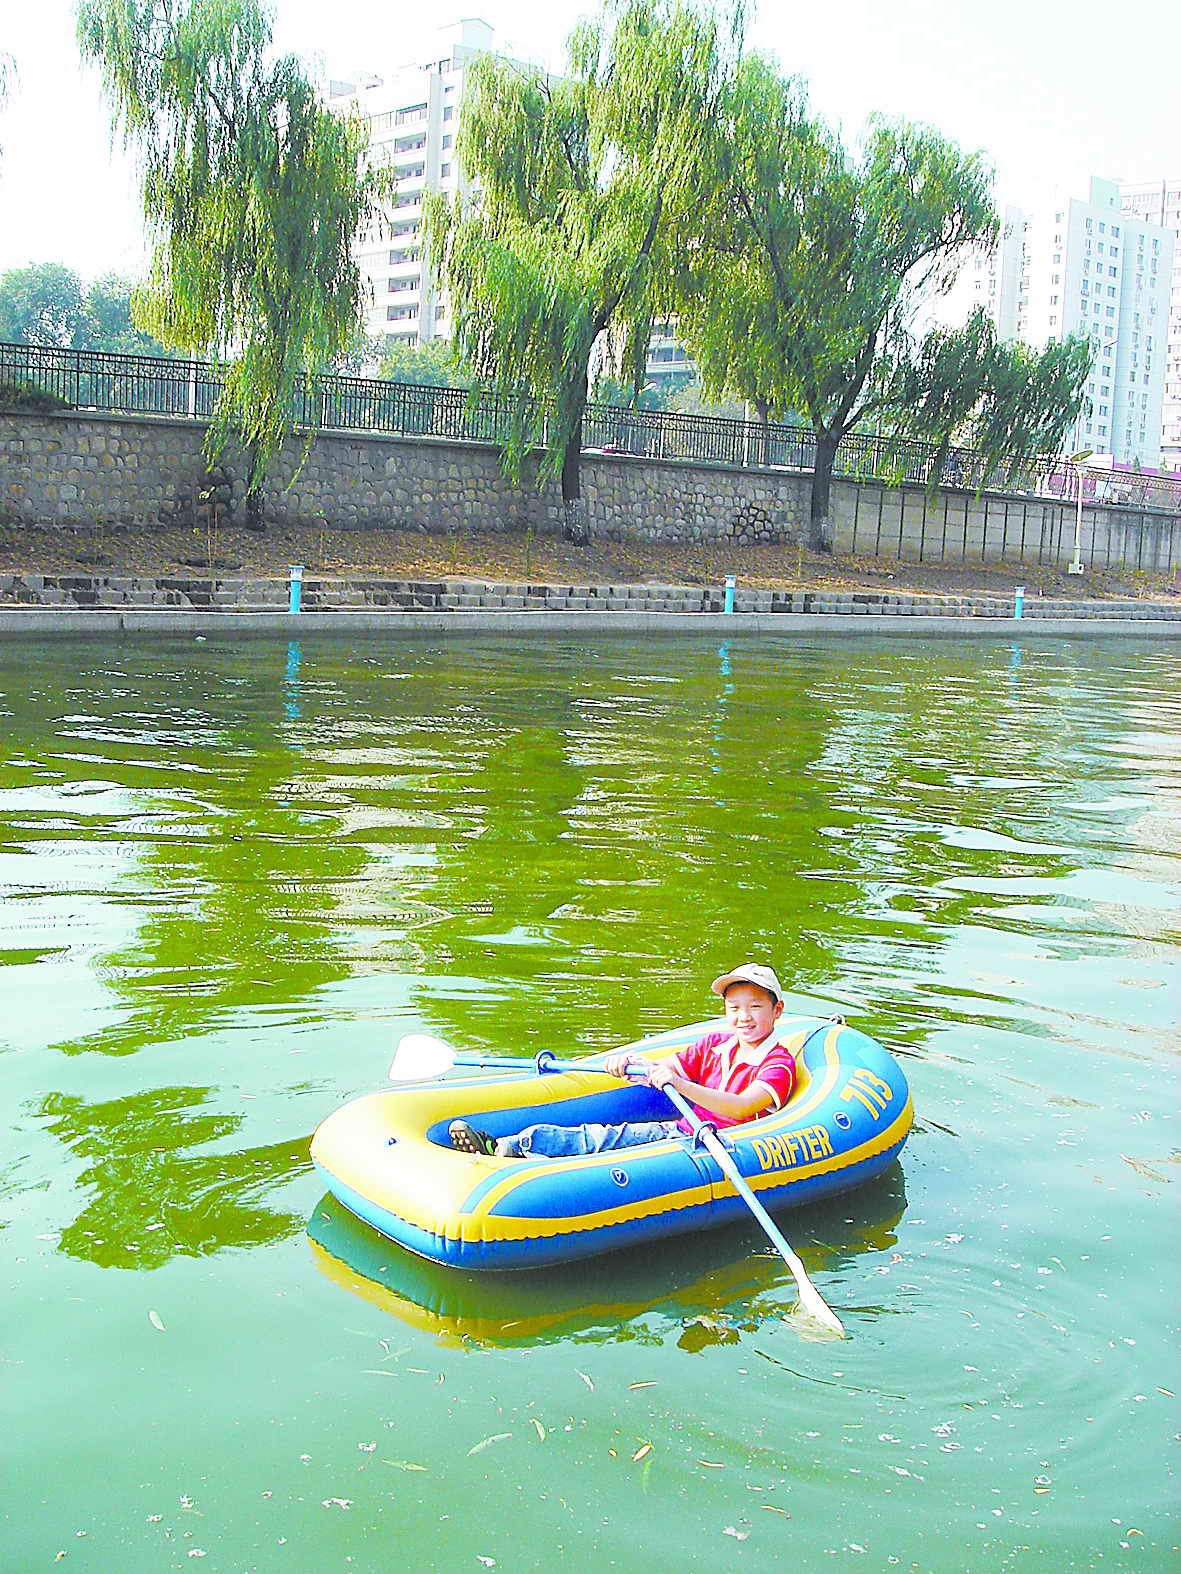 十一新玩法:市民护城河里划船